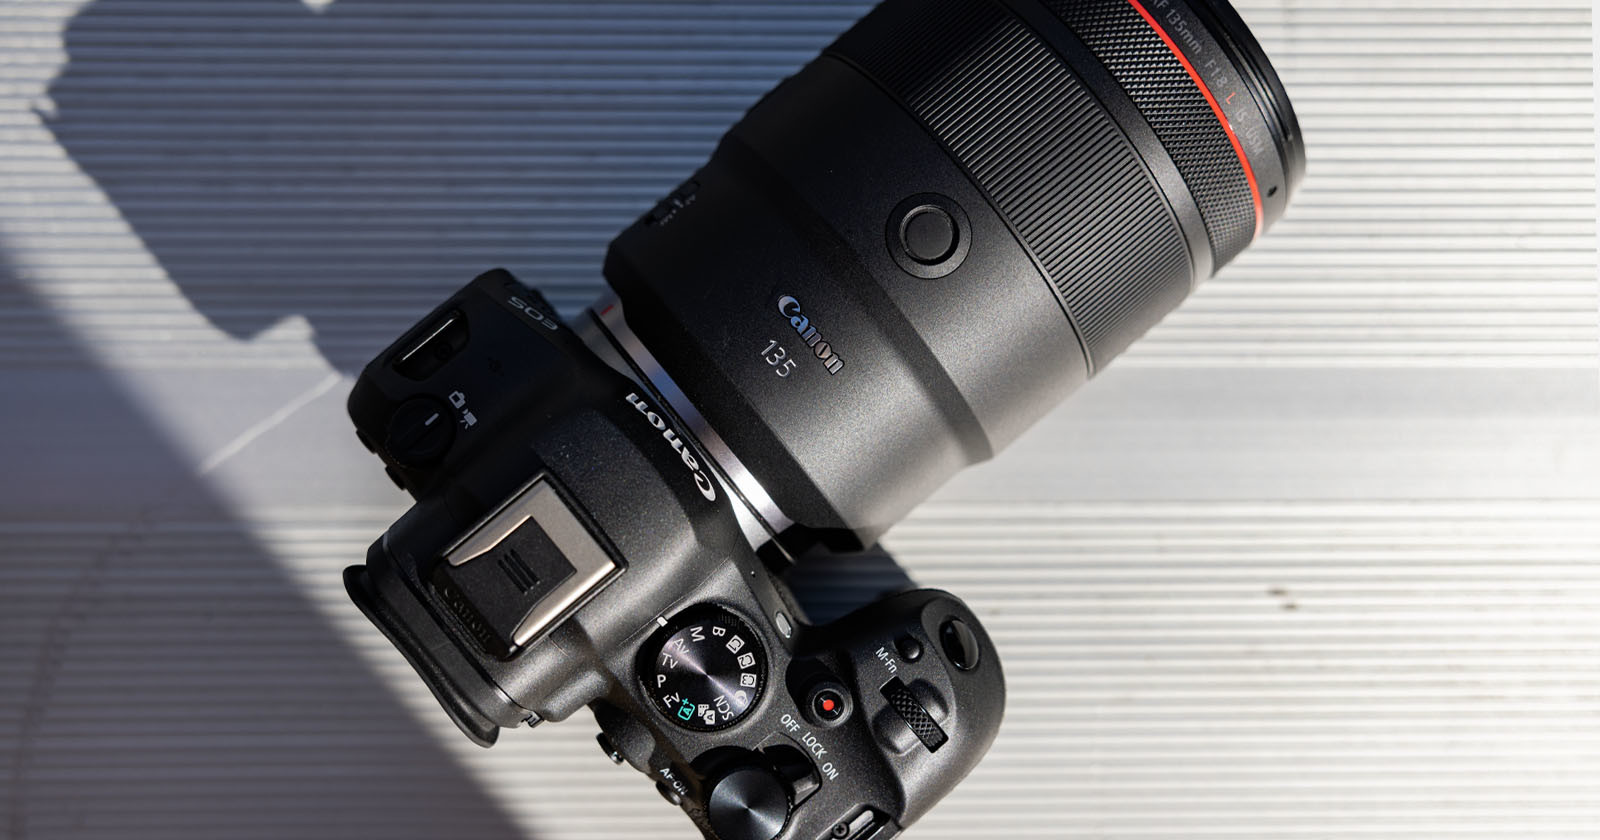  canon unveils 135mm usm prime lens 